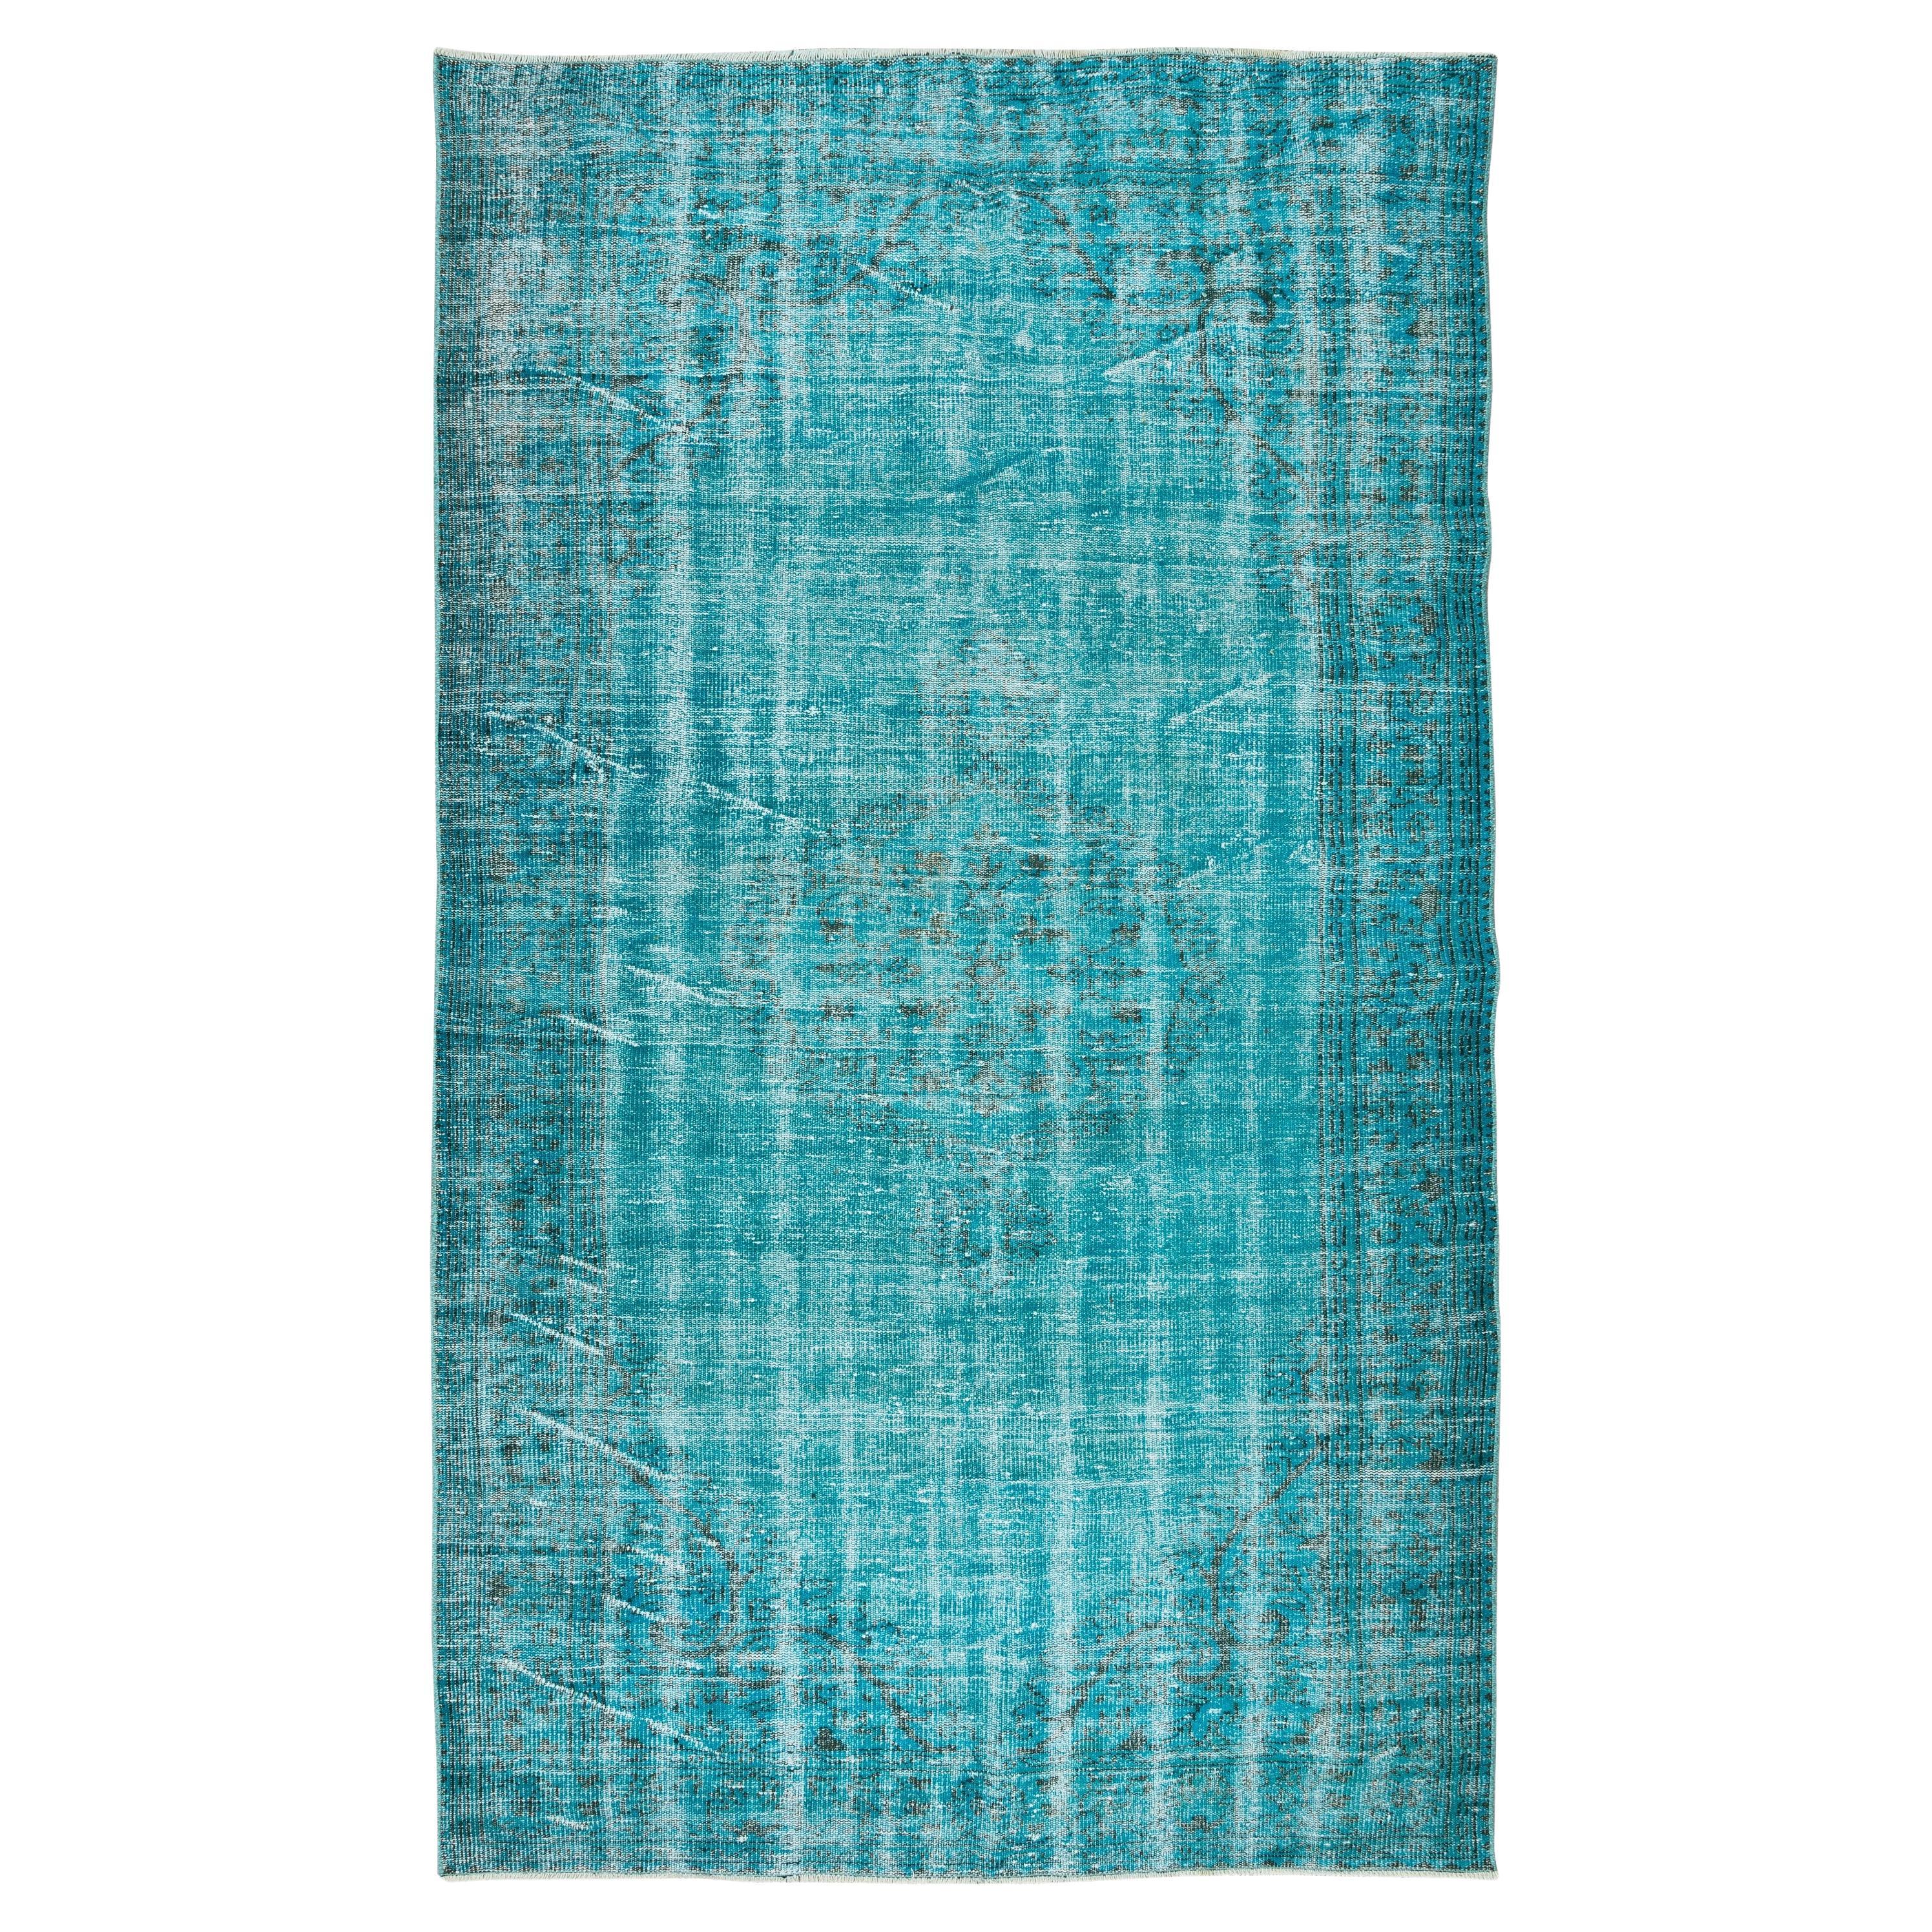 5.6x10 Ft Teal Blauer Teal-Teppich für moderne Inneneinrichtung, handgefertigter türkischer Teppich